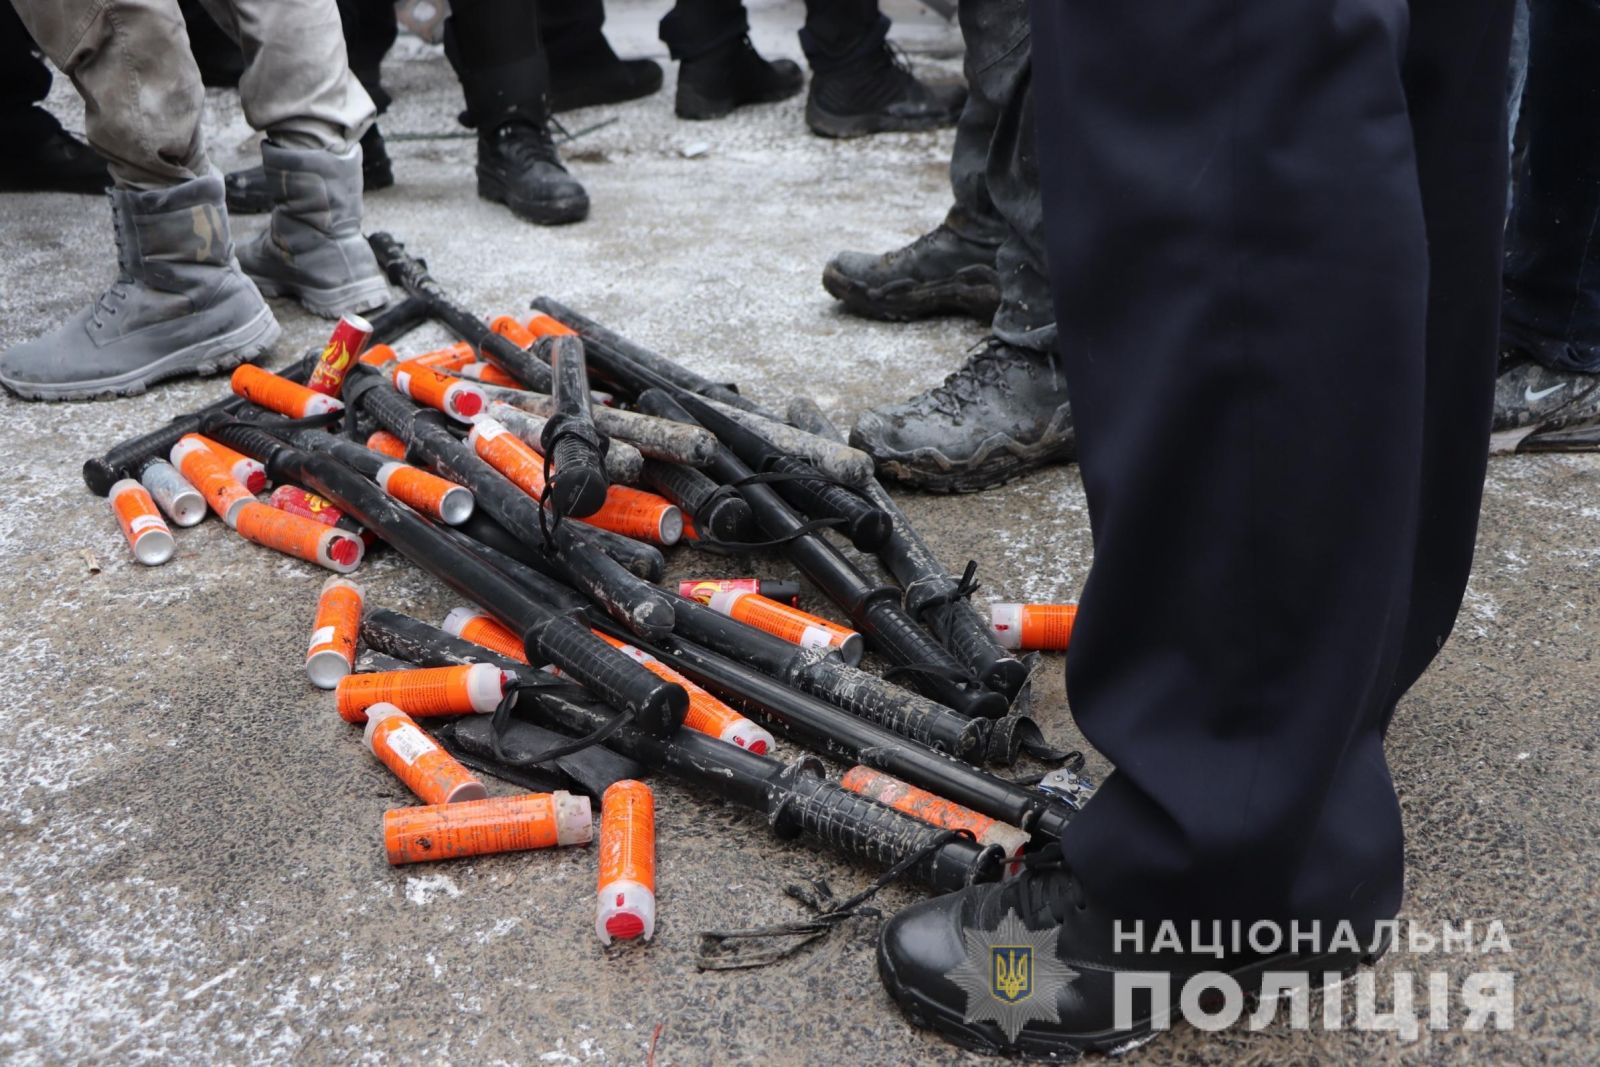 Столкновения в Харькове на Барабашово: полиция рассказала о полсотни задержанных, пятерых пострадавших и открытом деле, фото — Нацполиция